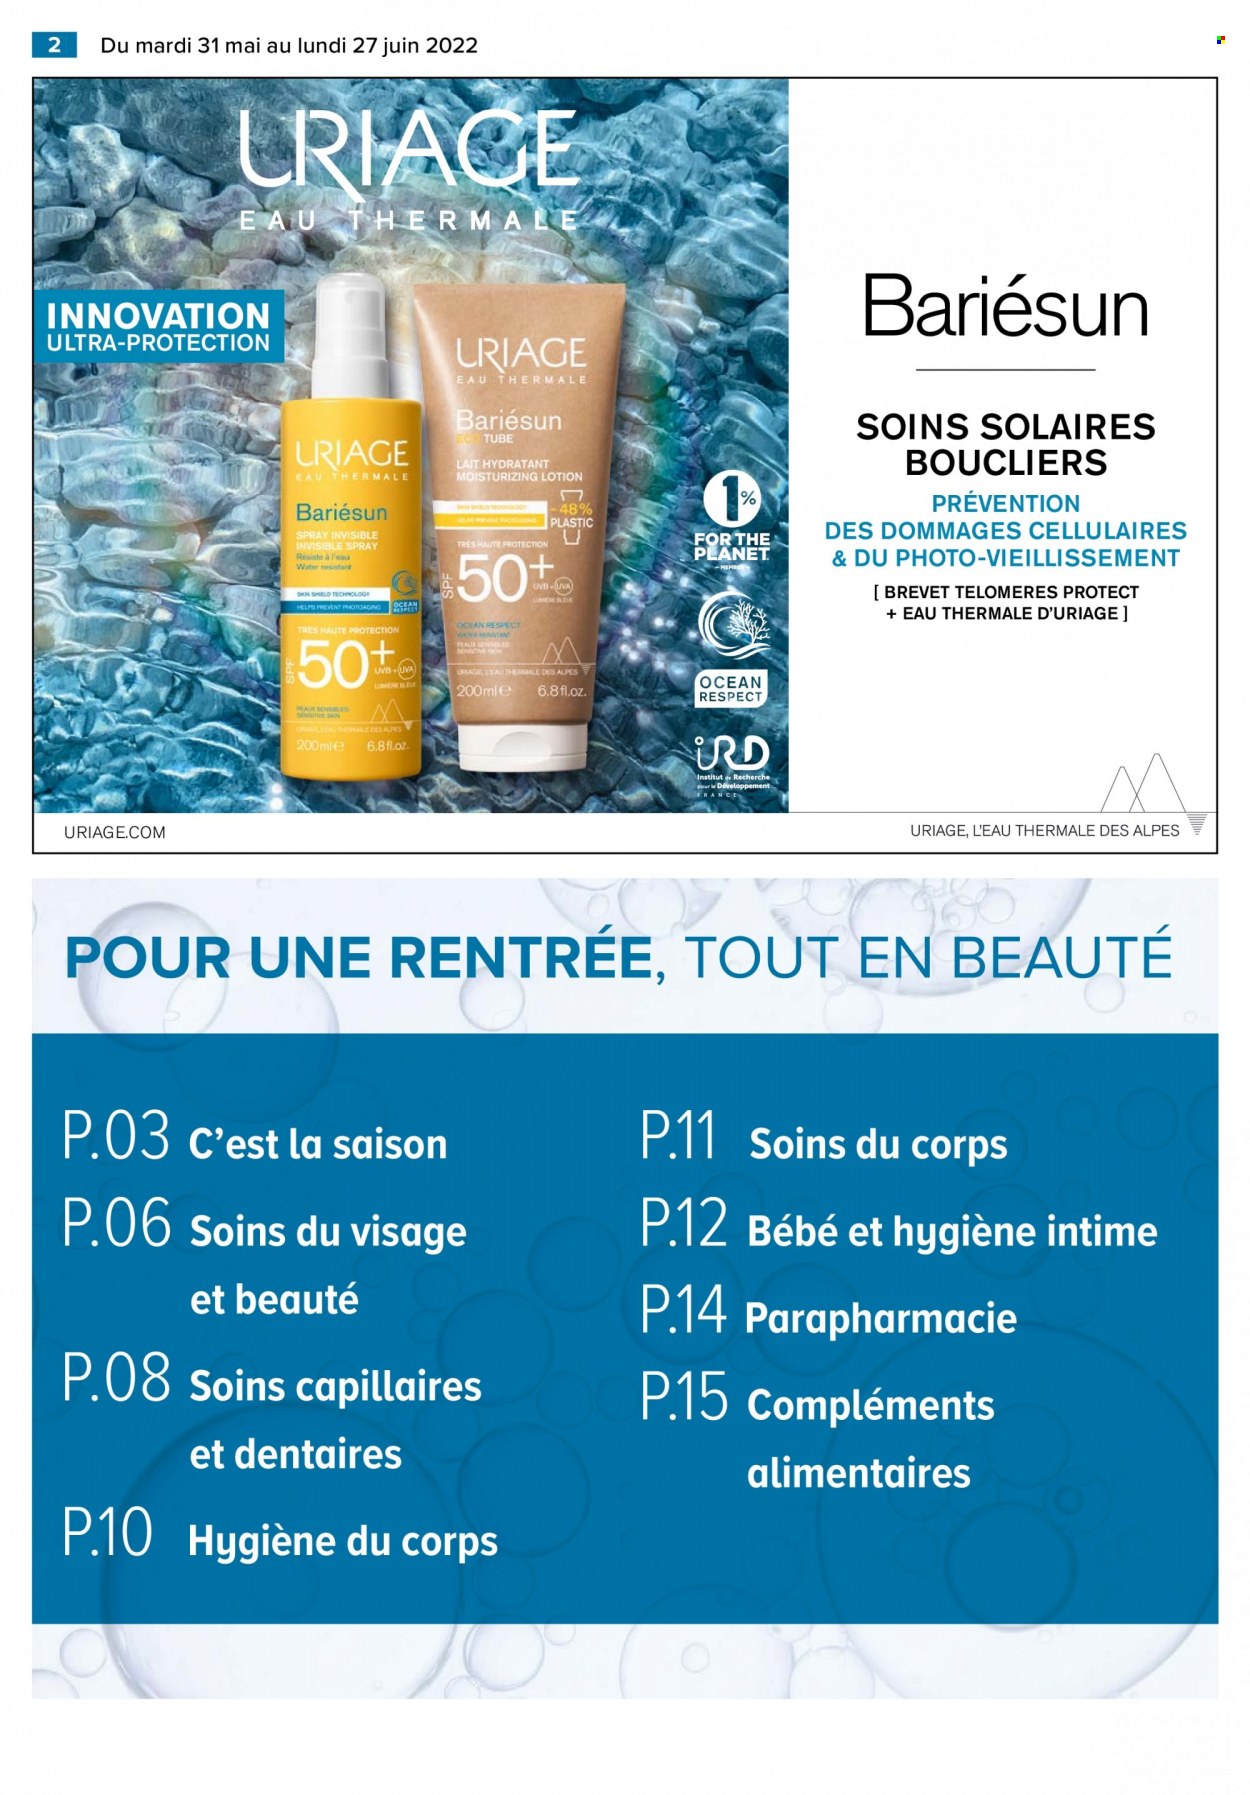 thumbnail - Catalogue Carrefour Hypermarchés - 31/05/2022 - 27/06/2022 - Produits soldés - lait, Uriage, lait hydratant, compléments alimentaires. Page 4.